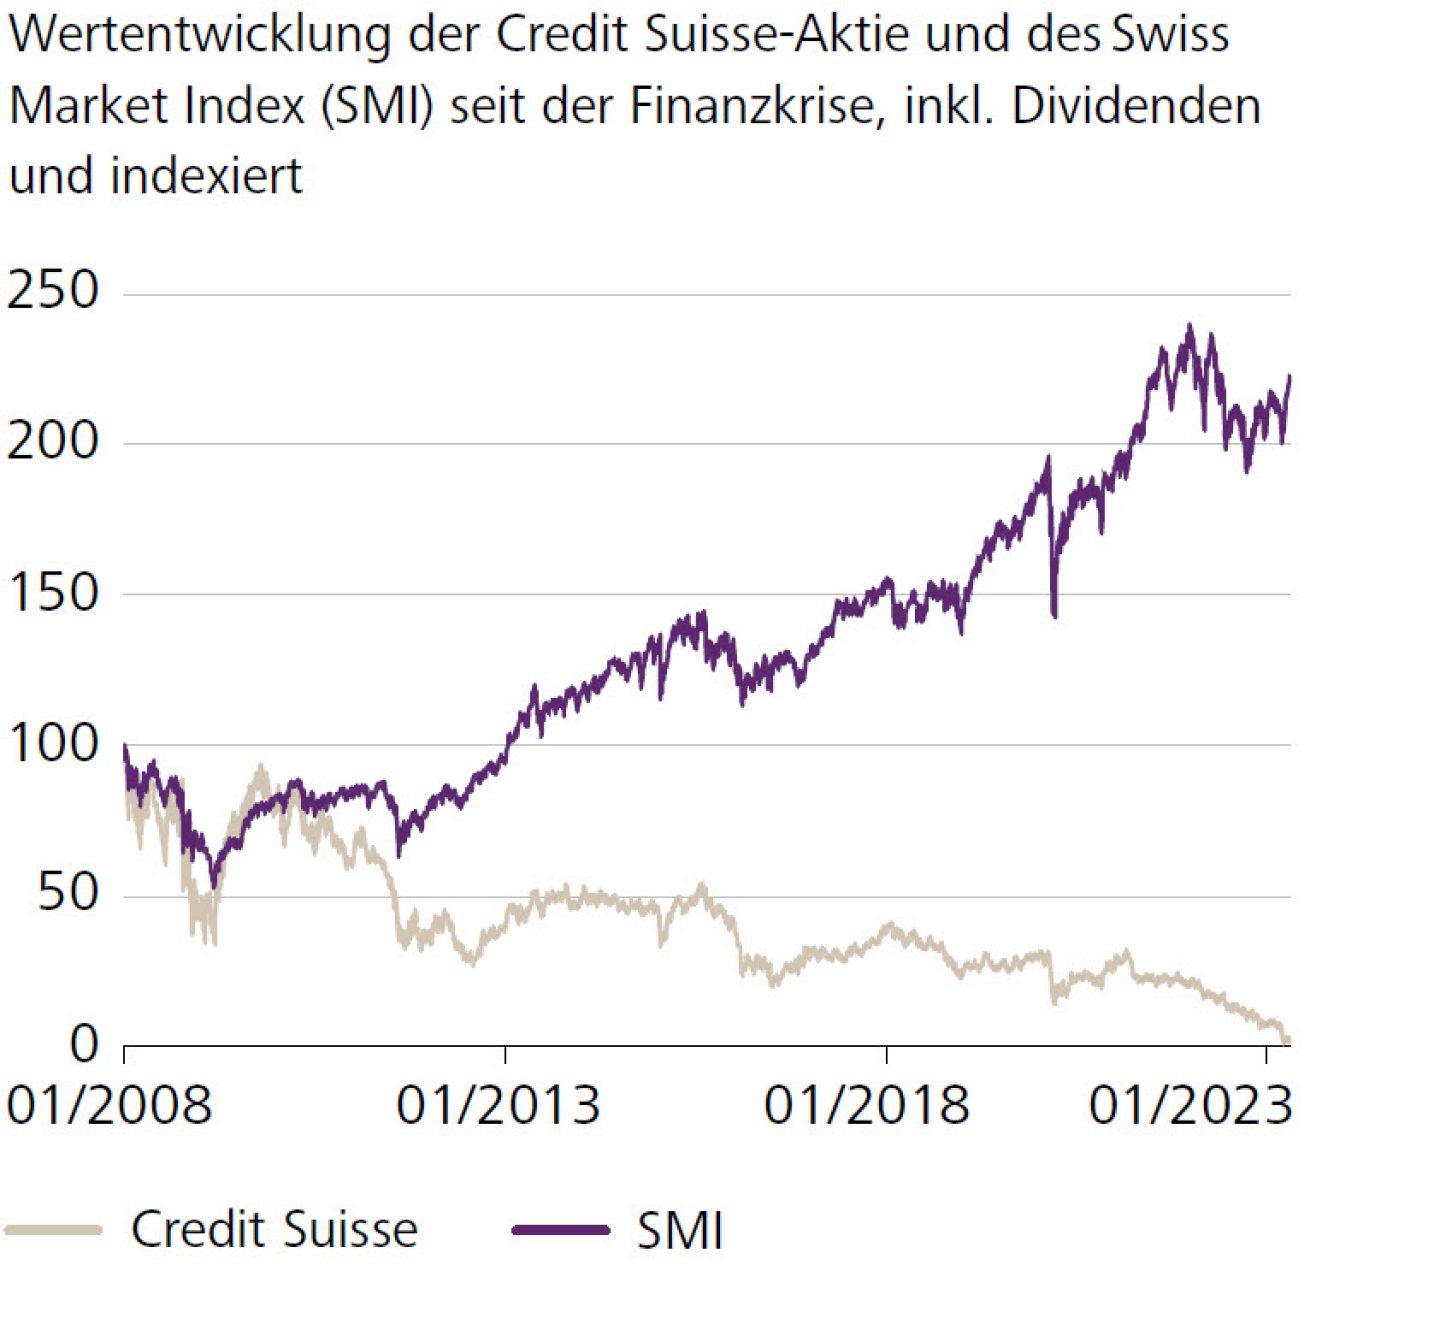 Wertentwicklung der Credit Suisse-Aktie und des Swiss Market Index (SMI) seit der Finanzkrise, indexiert 